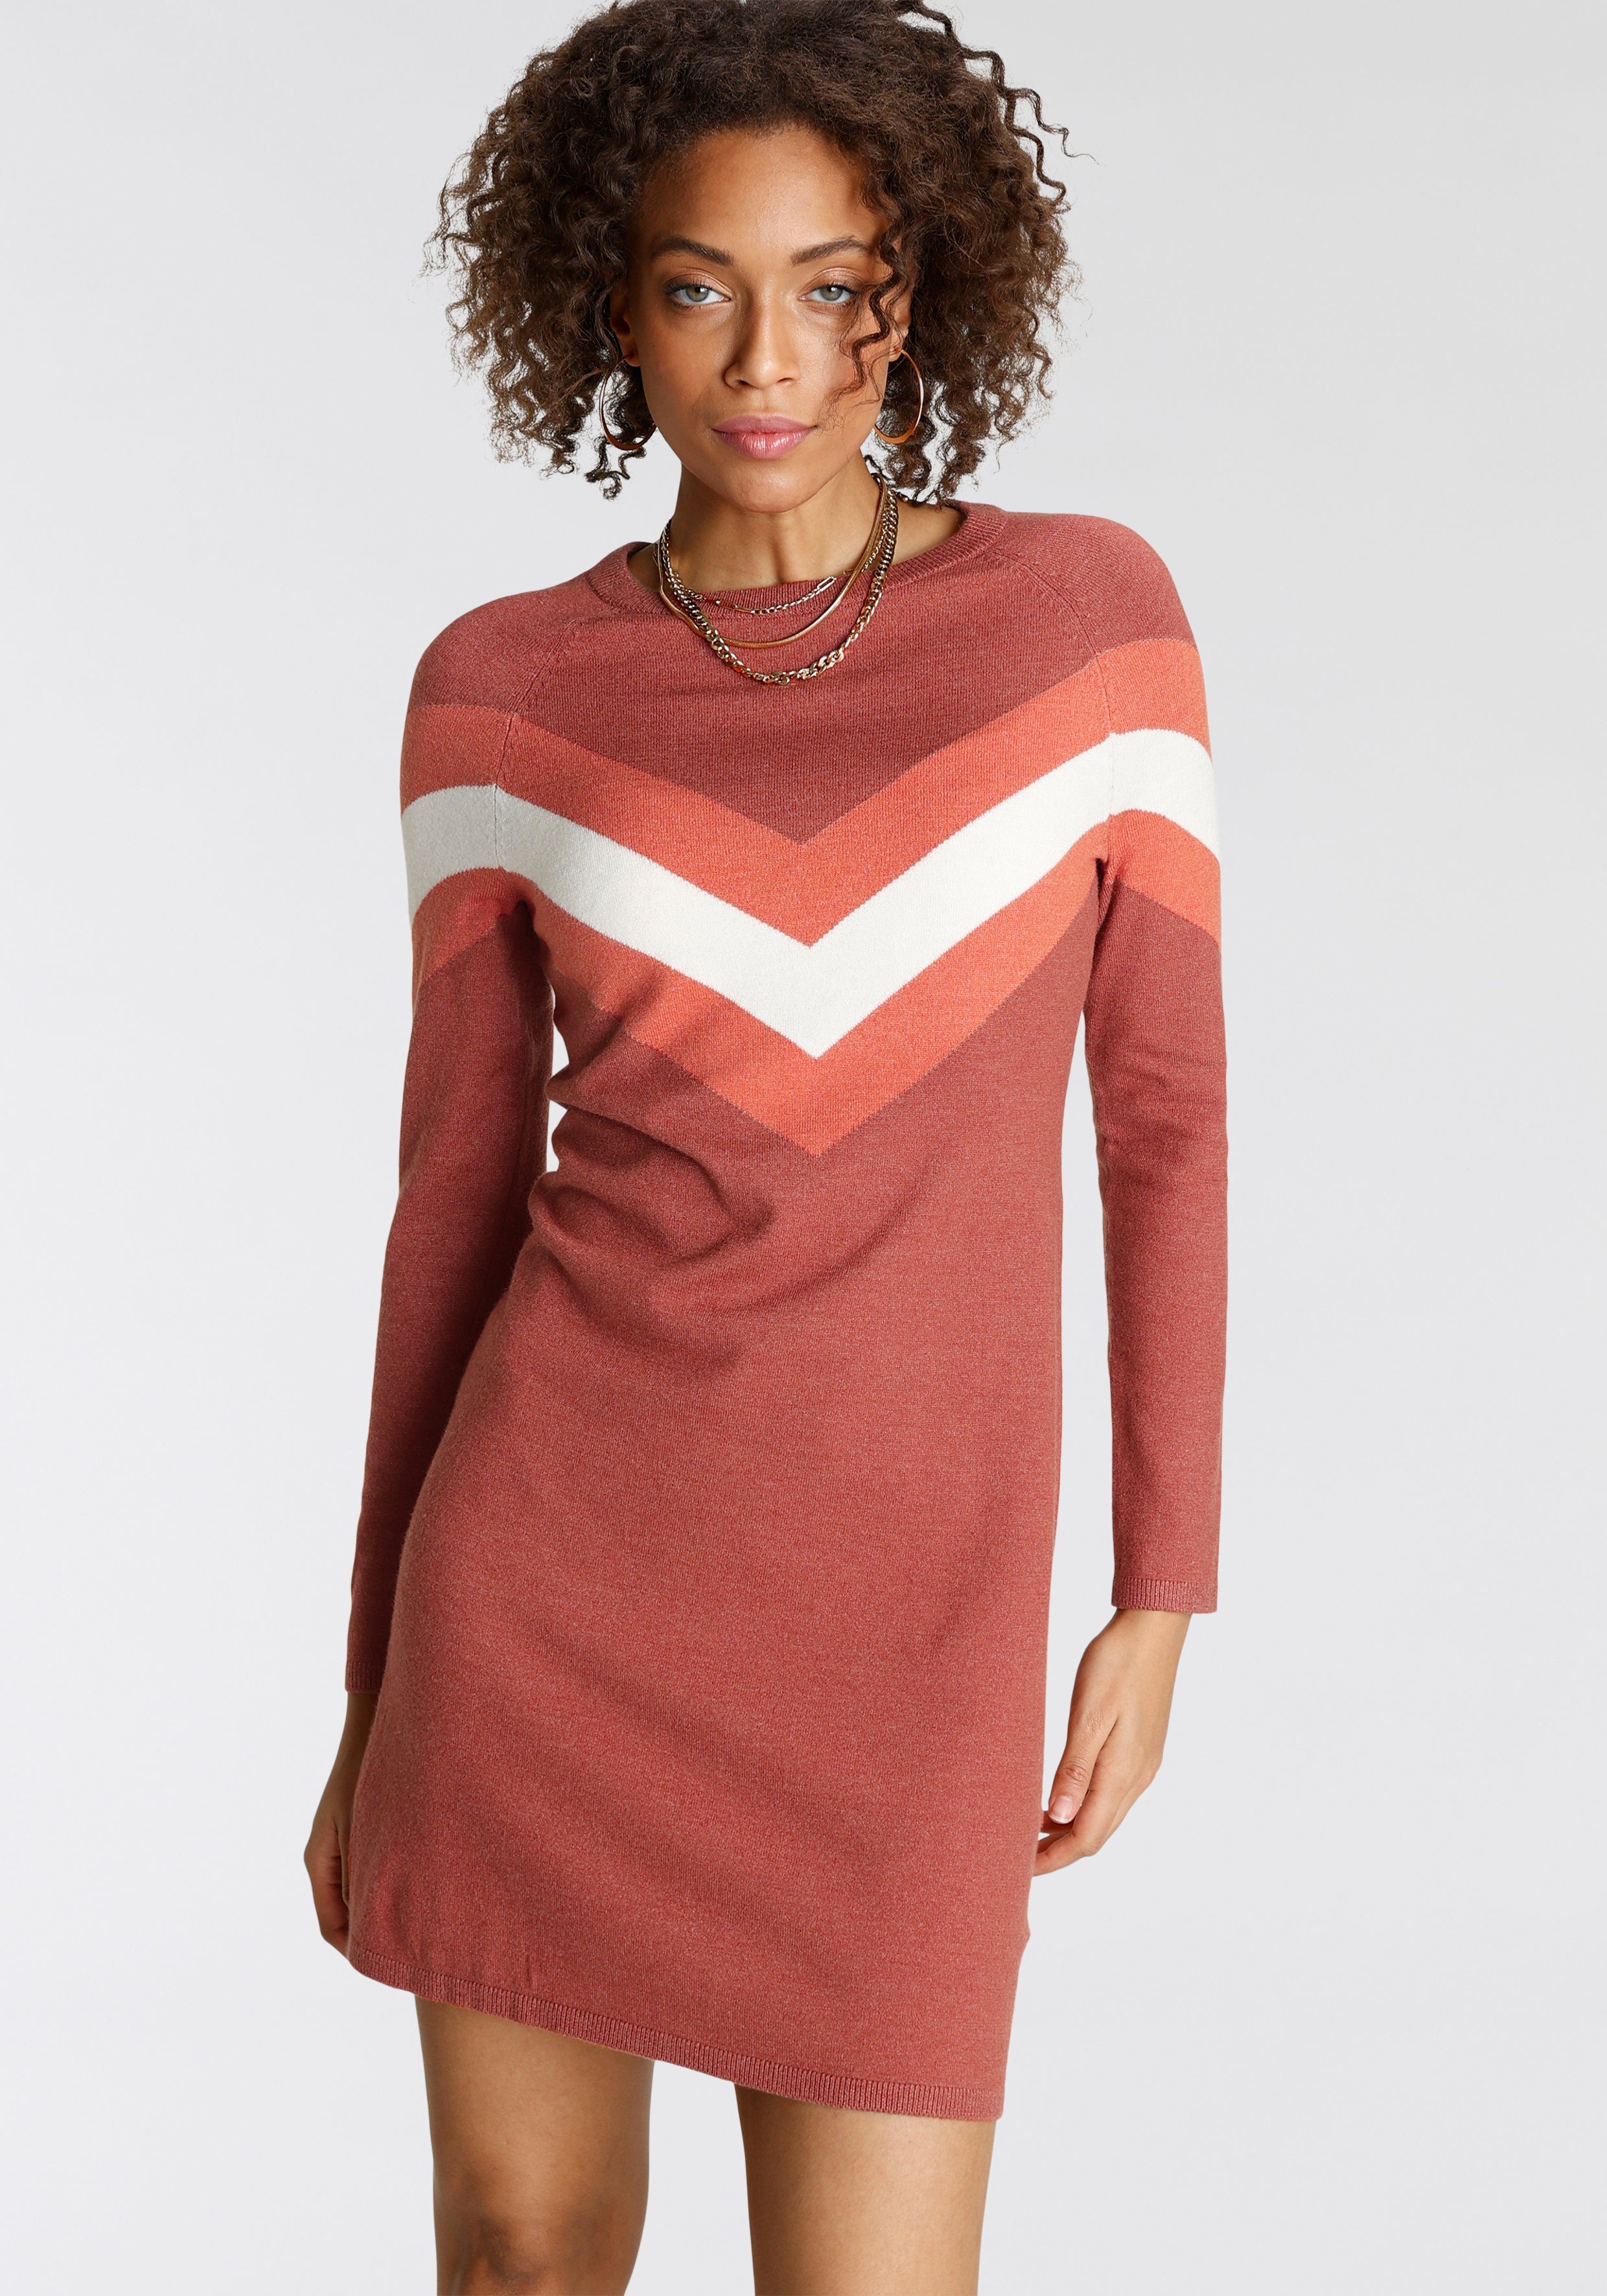 Tamaris Strickkleid mit Streifen-Muster rost melange (Kleid aus nachhaltigem Material)